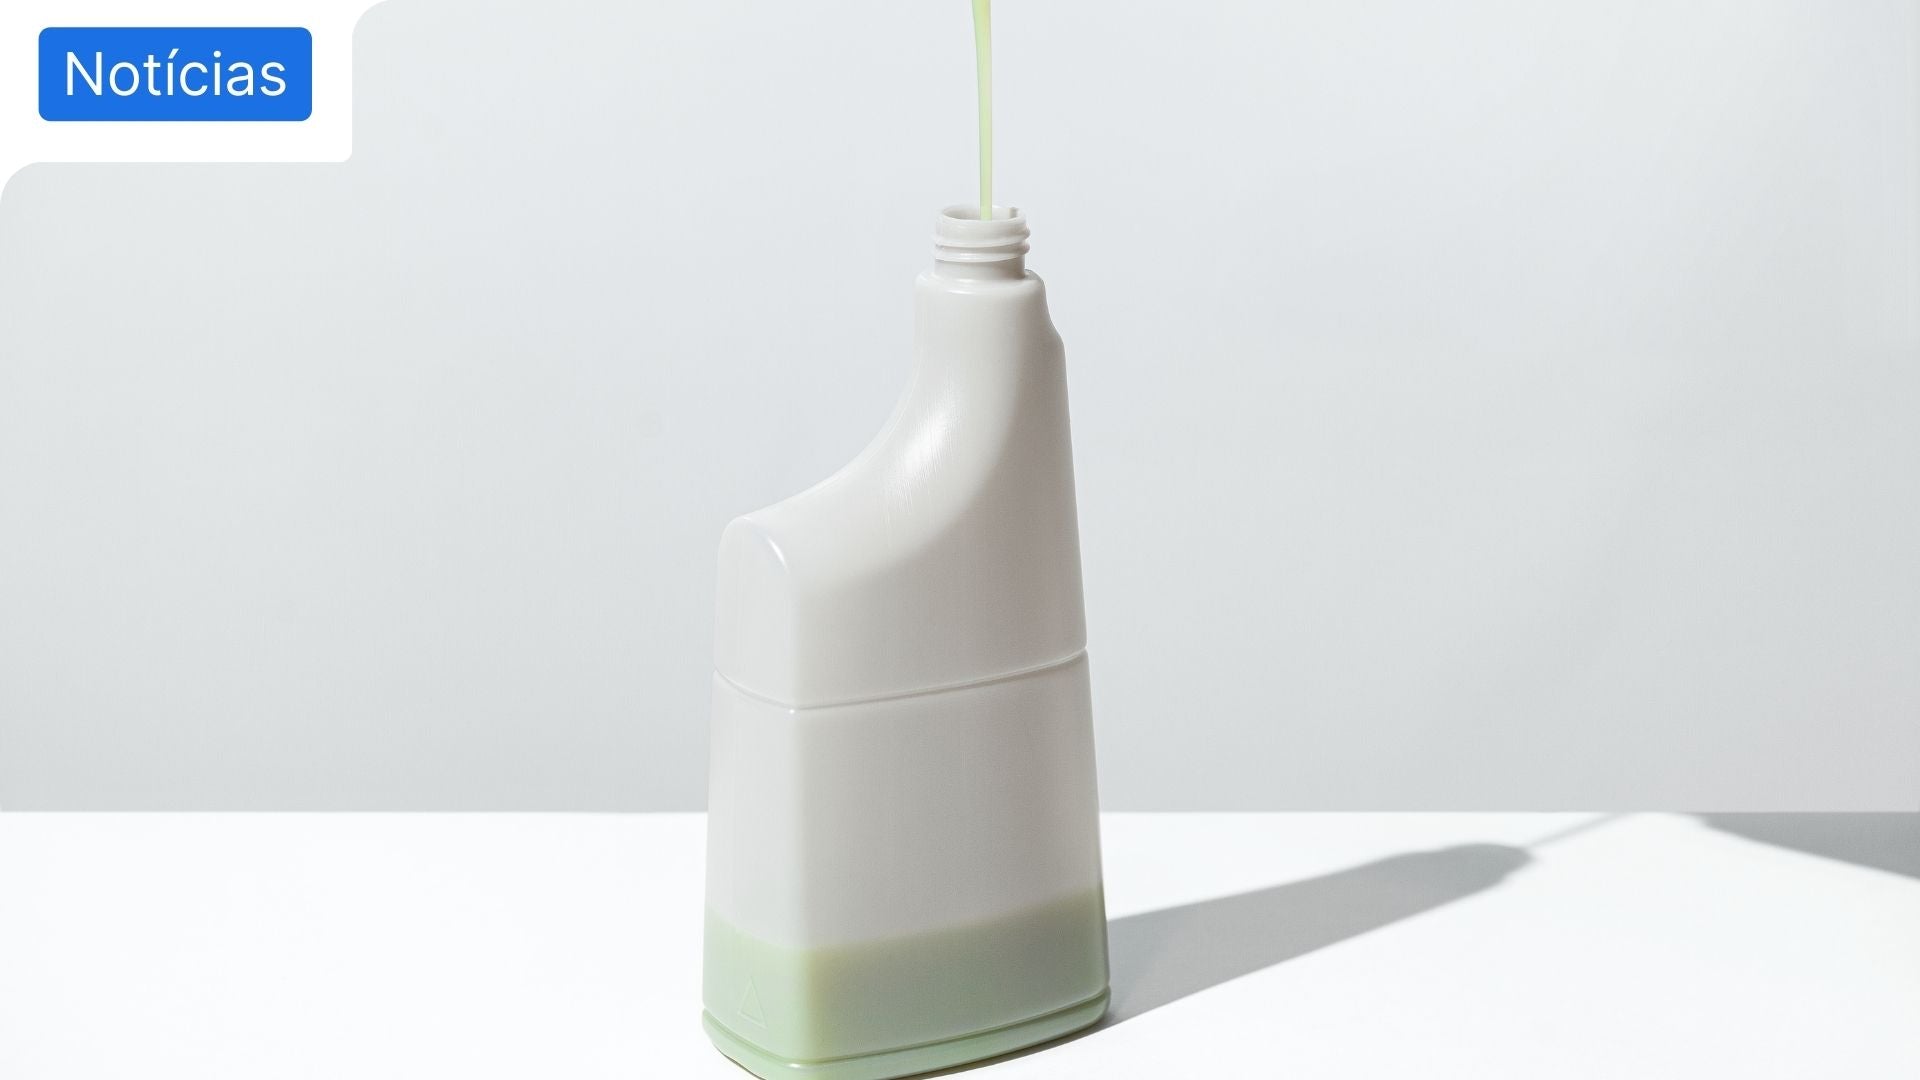 Detergente aloe vera EcoX, feito a partir de óleo usado, a ser colocado na garrafa da marca